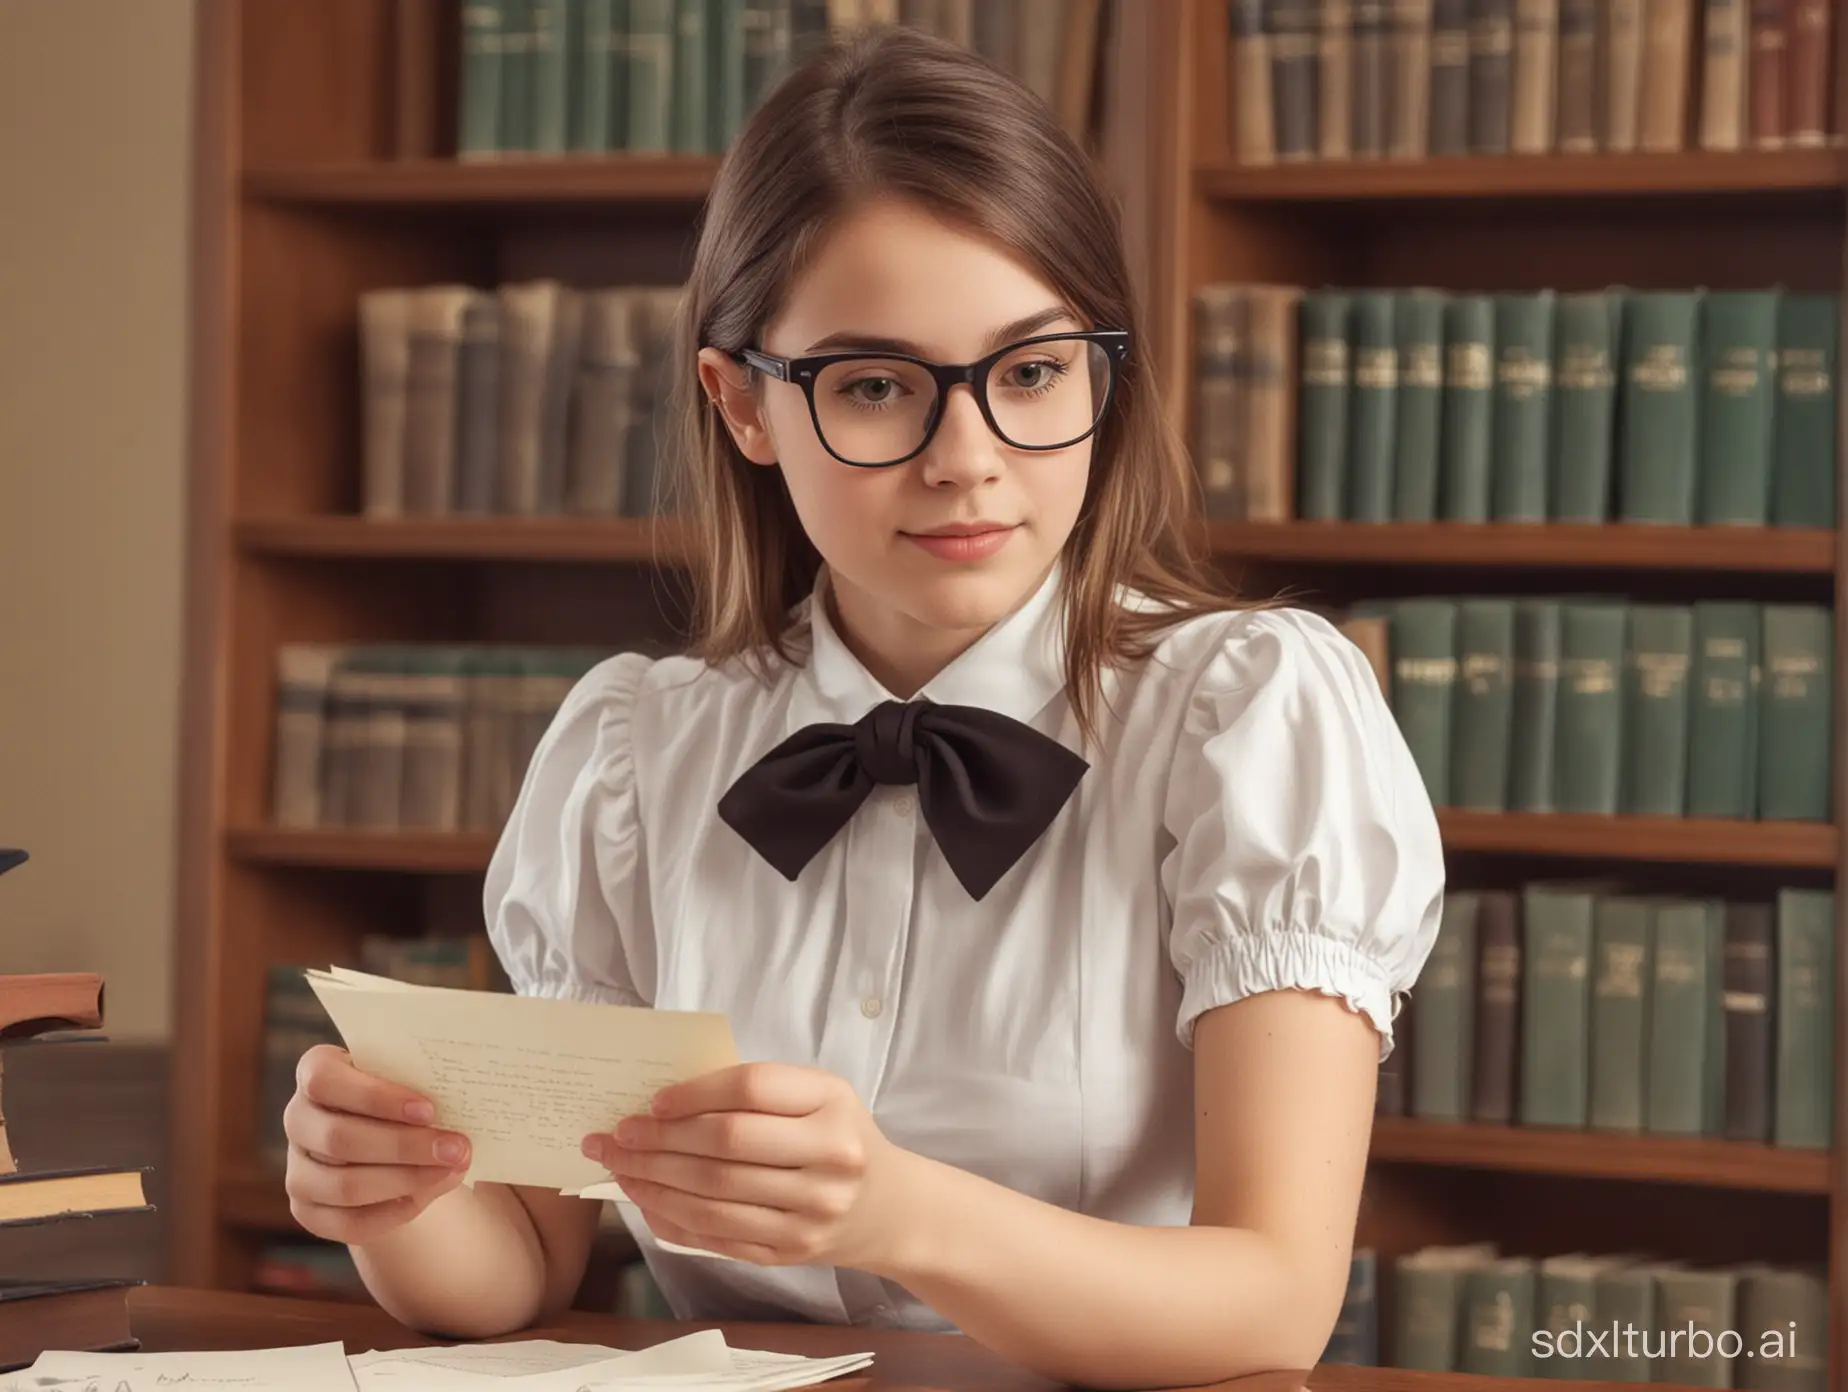 una chica bibliotecaria recibe una carta